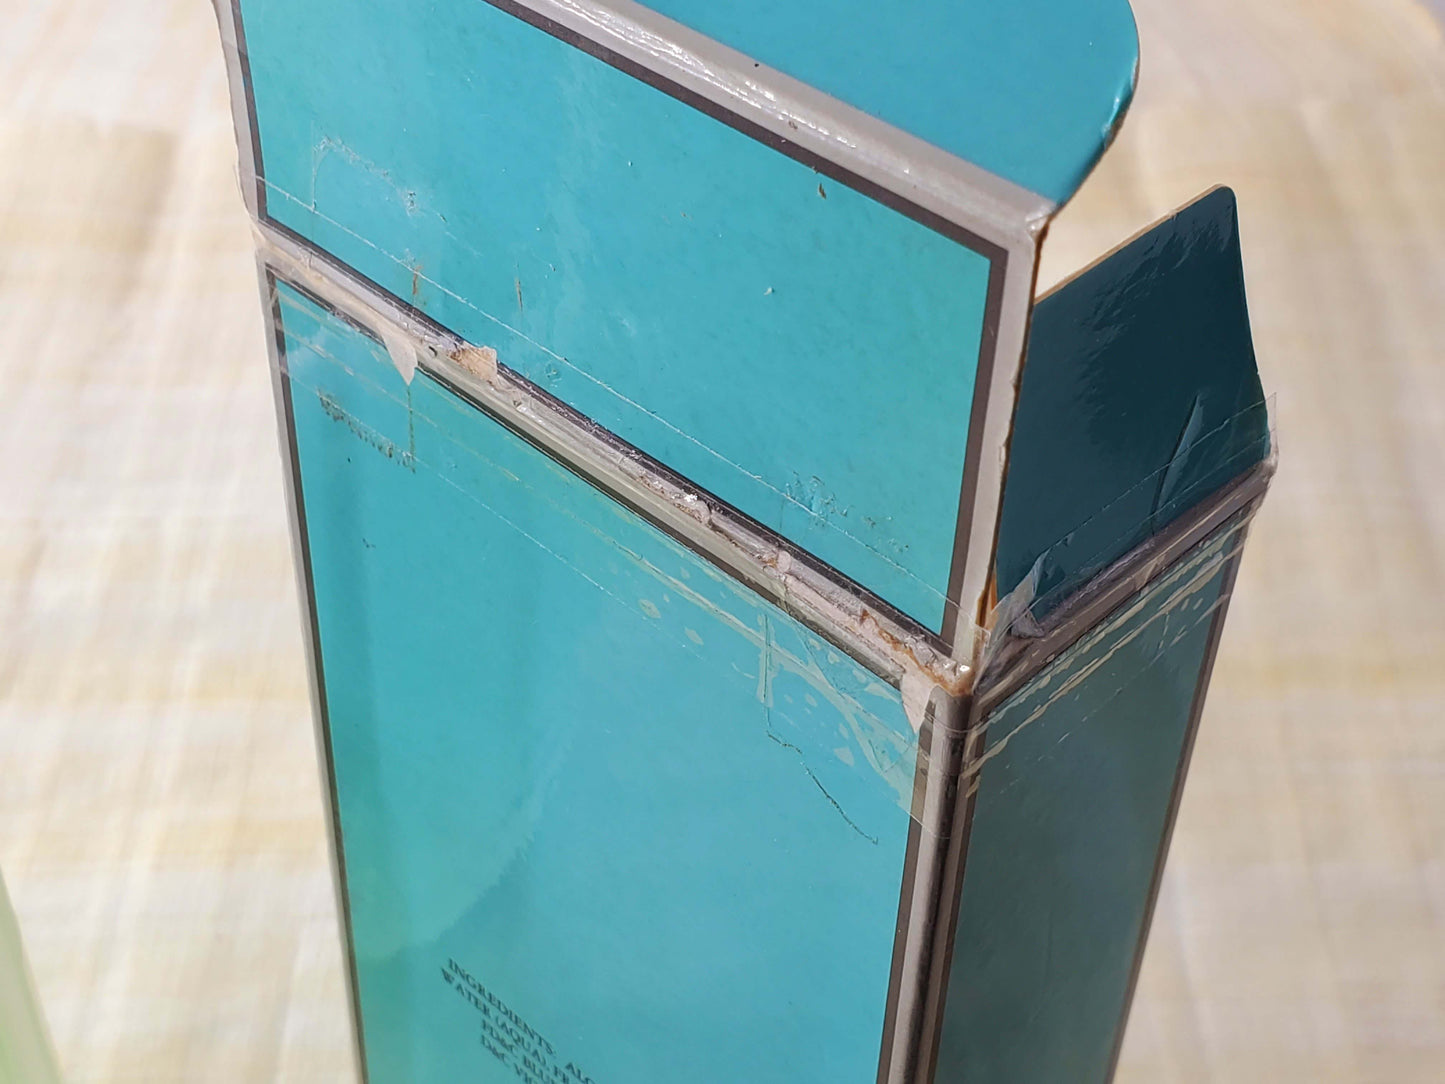 Tiffany for Men Sport EDT Spray 100 ml 3.4 oz, Vintage, Slightly damaged box